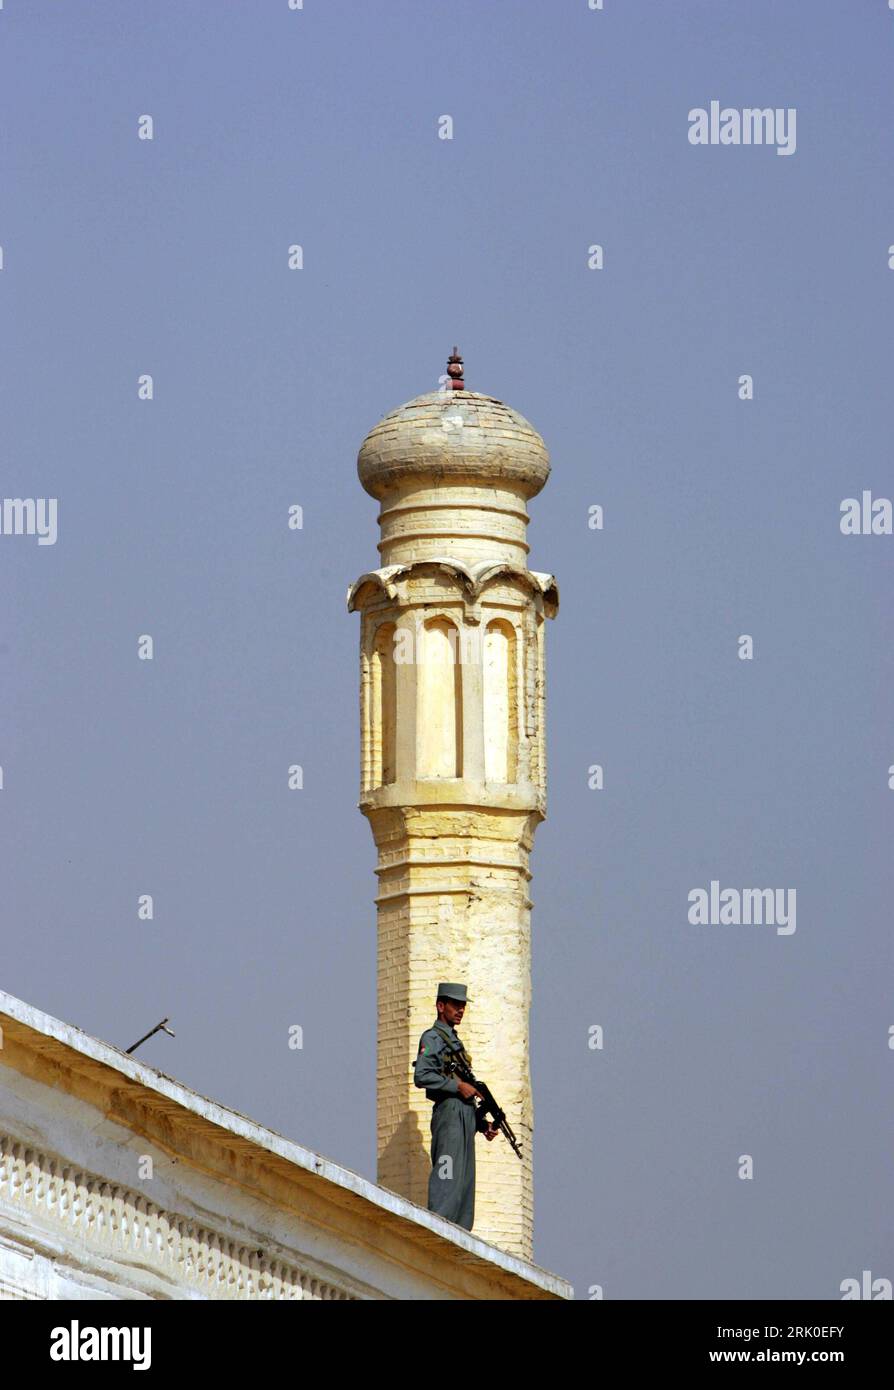 Bildnummer: 52717480 Datum: 30.09.2008 Copyright: imago/Xinhua verschärfte Sicherheitsmaßnahmen - Bewaffneter Soldat auf dem Dach einer Moschee anlässlich des Eid-ul-Fitr Fests am Ende des Fastenmonats Ramadan in Kabul - PUBLICATIONxNOTxINxCHN , Gebäude, außen, Außenansicht , Personen; 2008, Kabul, Afghanistan, Soldat, Sicherheit, Schutz, Ramadan, Fastenmonat, Eid-al-Fitr,; , hoch, Kbdig, Einzelbild, Islam, Religion, , Militaer, Staat, Gesellschaft, Asien o0 Minarett Bildnummer 52717480 Datum 30 09 2008 Copyright Imago XINHUA Strengter Security Measures bewaffneter Soldat auf dem Dach einer Moschee d Stockfoto